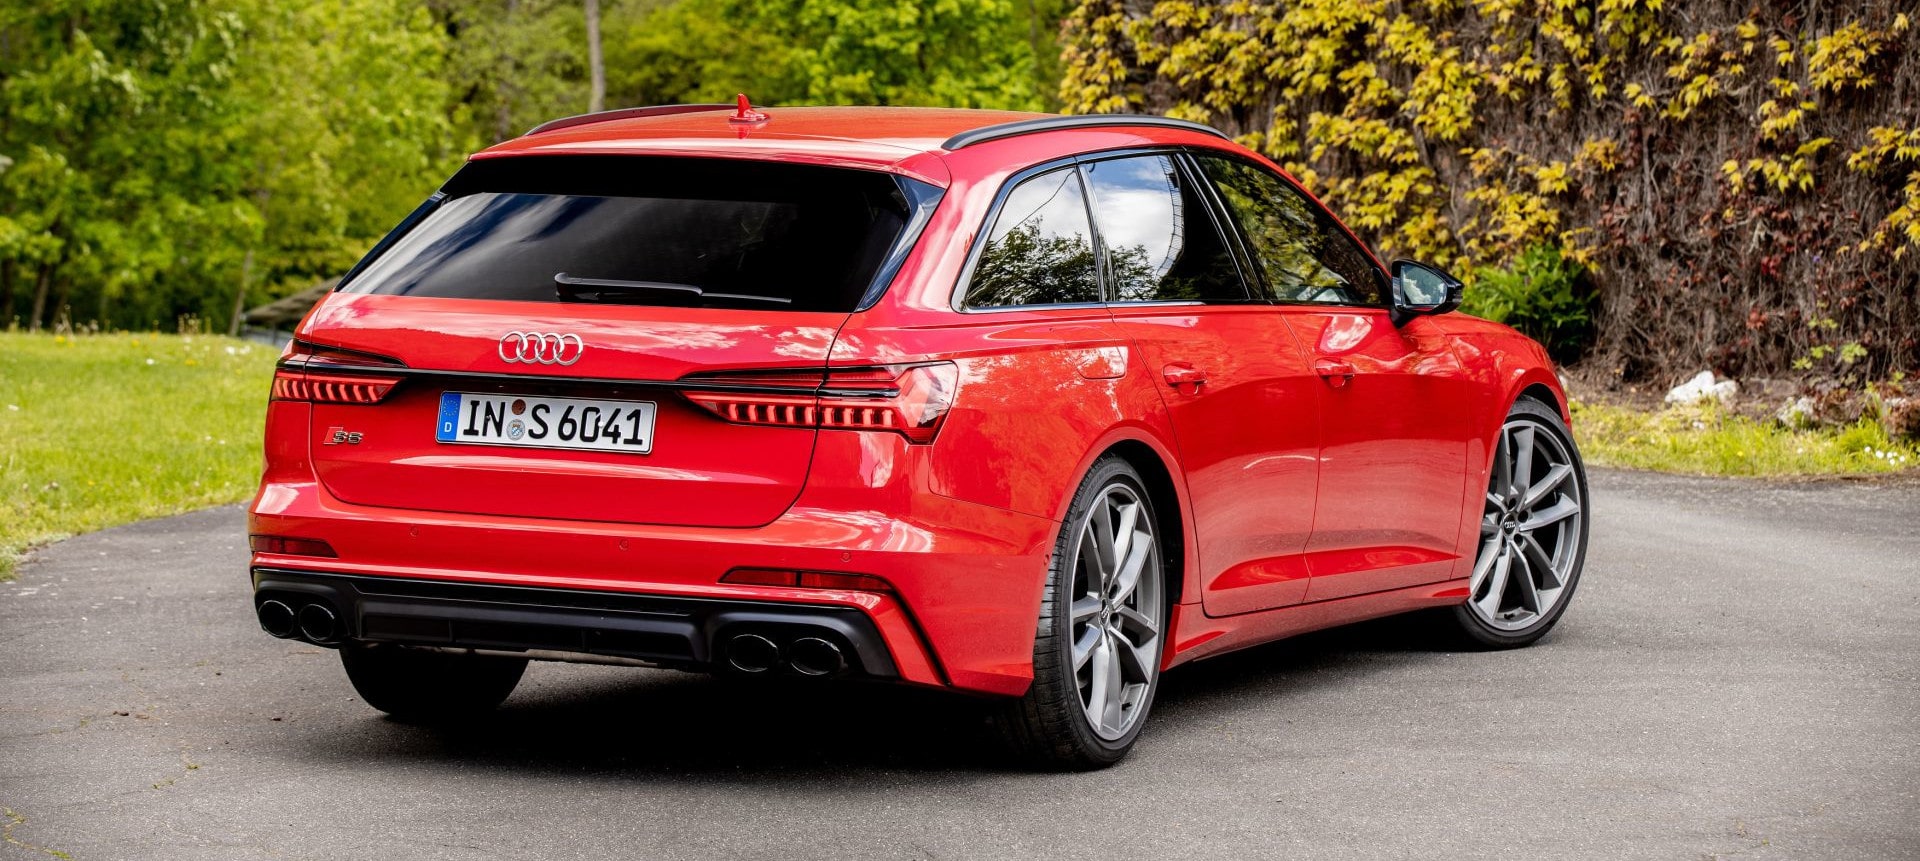 Audi S červené